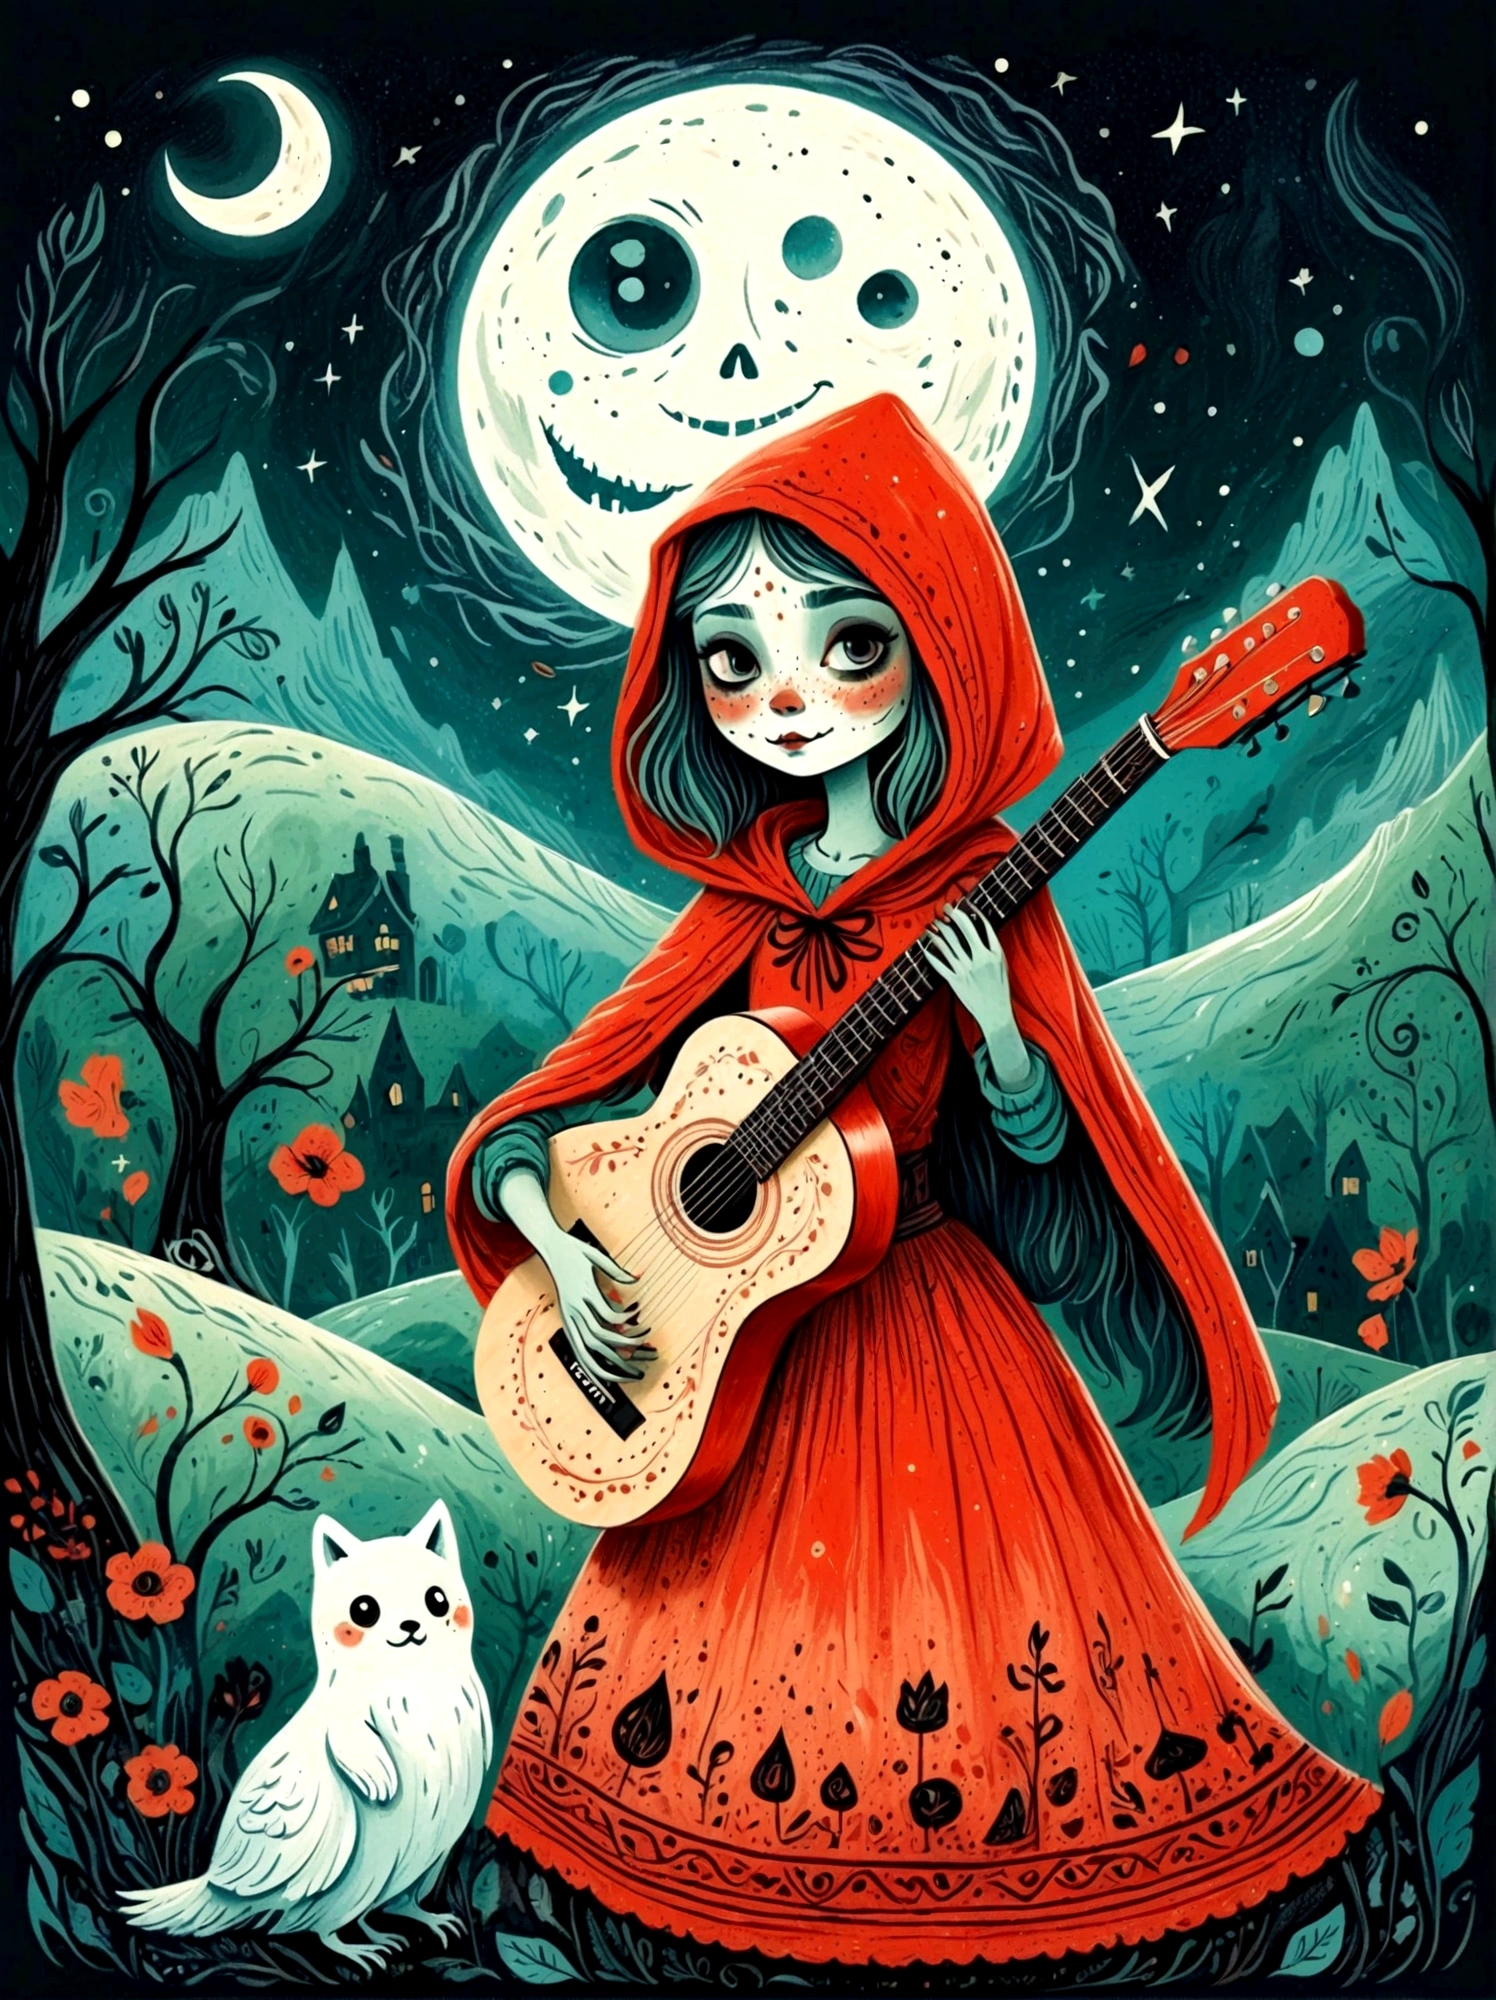 卡通手绘, 1個女孩, 獨自的, 可爱年轻迷人的小红帽女孩，浓浓僵尸妆, 弹奏一把旧吉他，吉他手，幽灵人群，幽灵观察者，演唱會現場，繁星點點的夜晚，陰沉有霧的氣氛，可爱的荒谬，非凡外表的吸引与拒绝，神奇的天真藝術，明亮的蓝色和绿色，调色板是红色, 橙色和黑色的色调，具有粗略的风格, 背景应该有简单的手绘涂鸦图案, 1shxx1